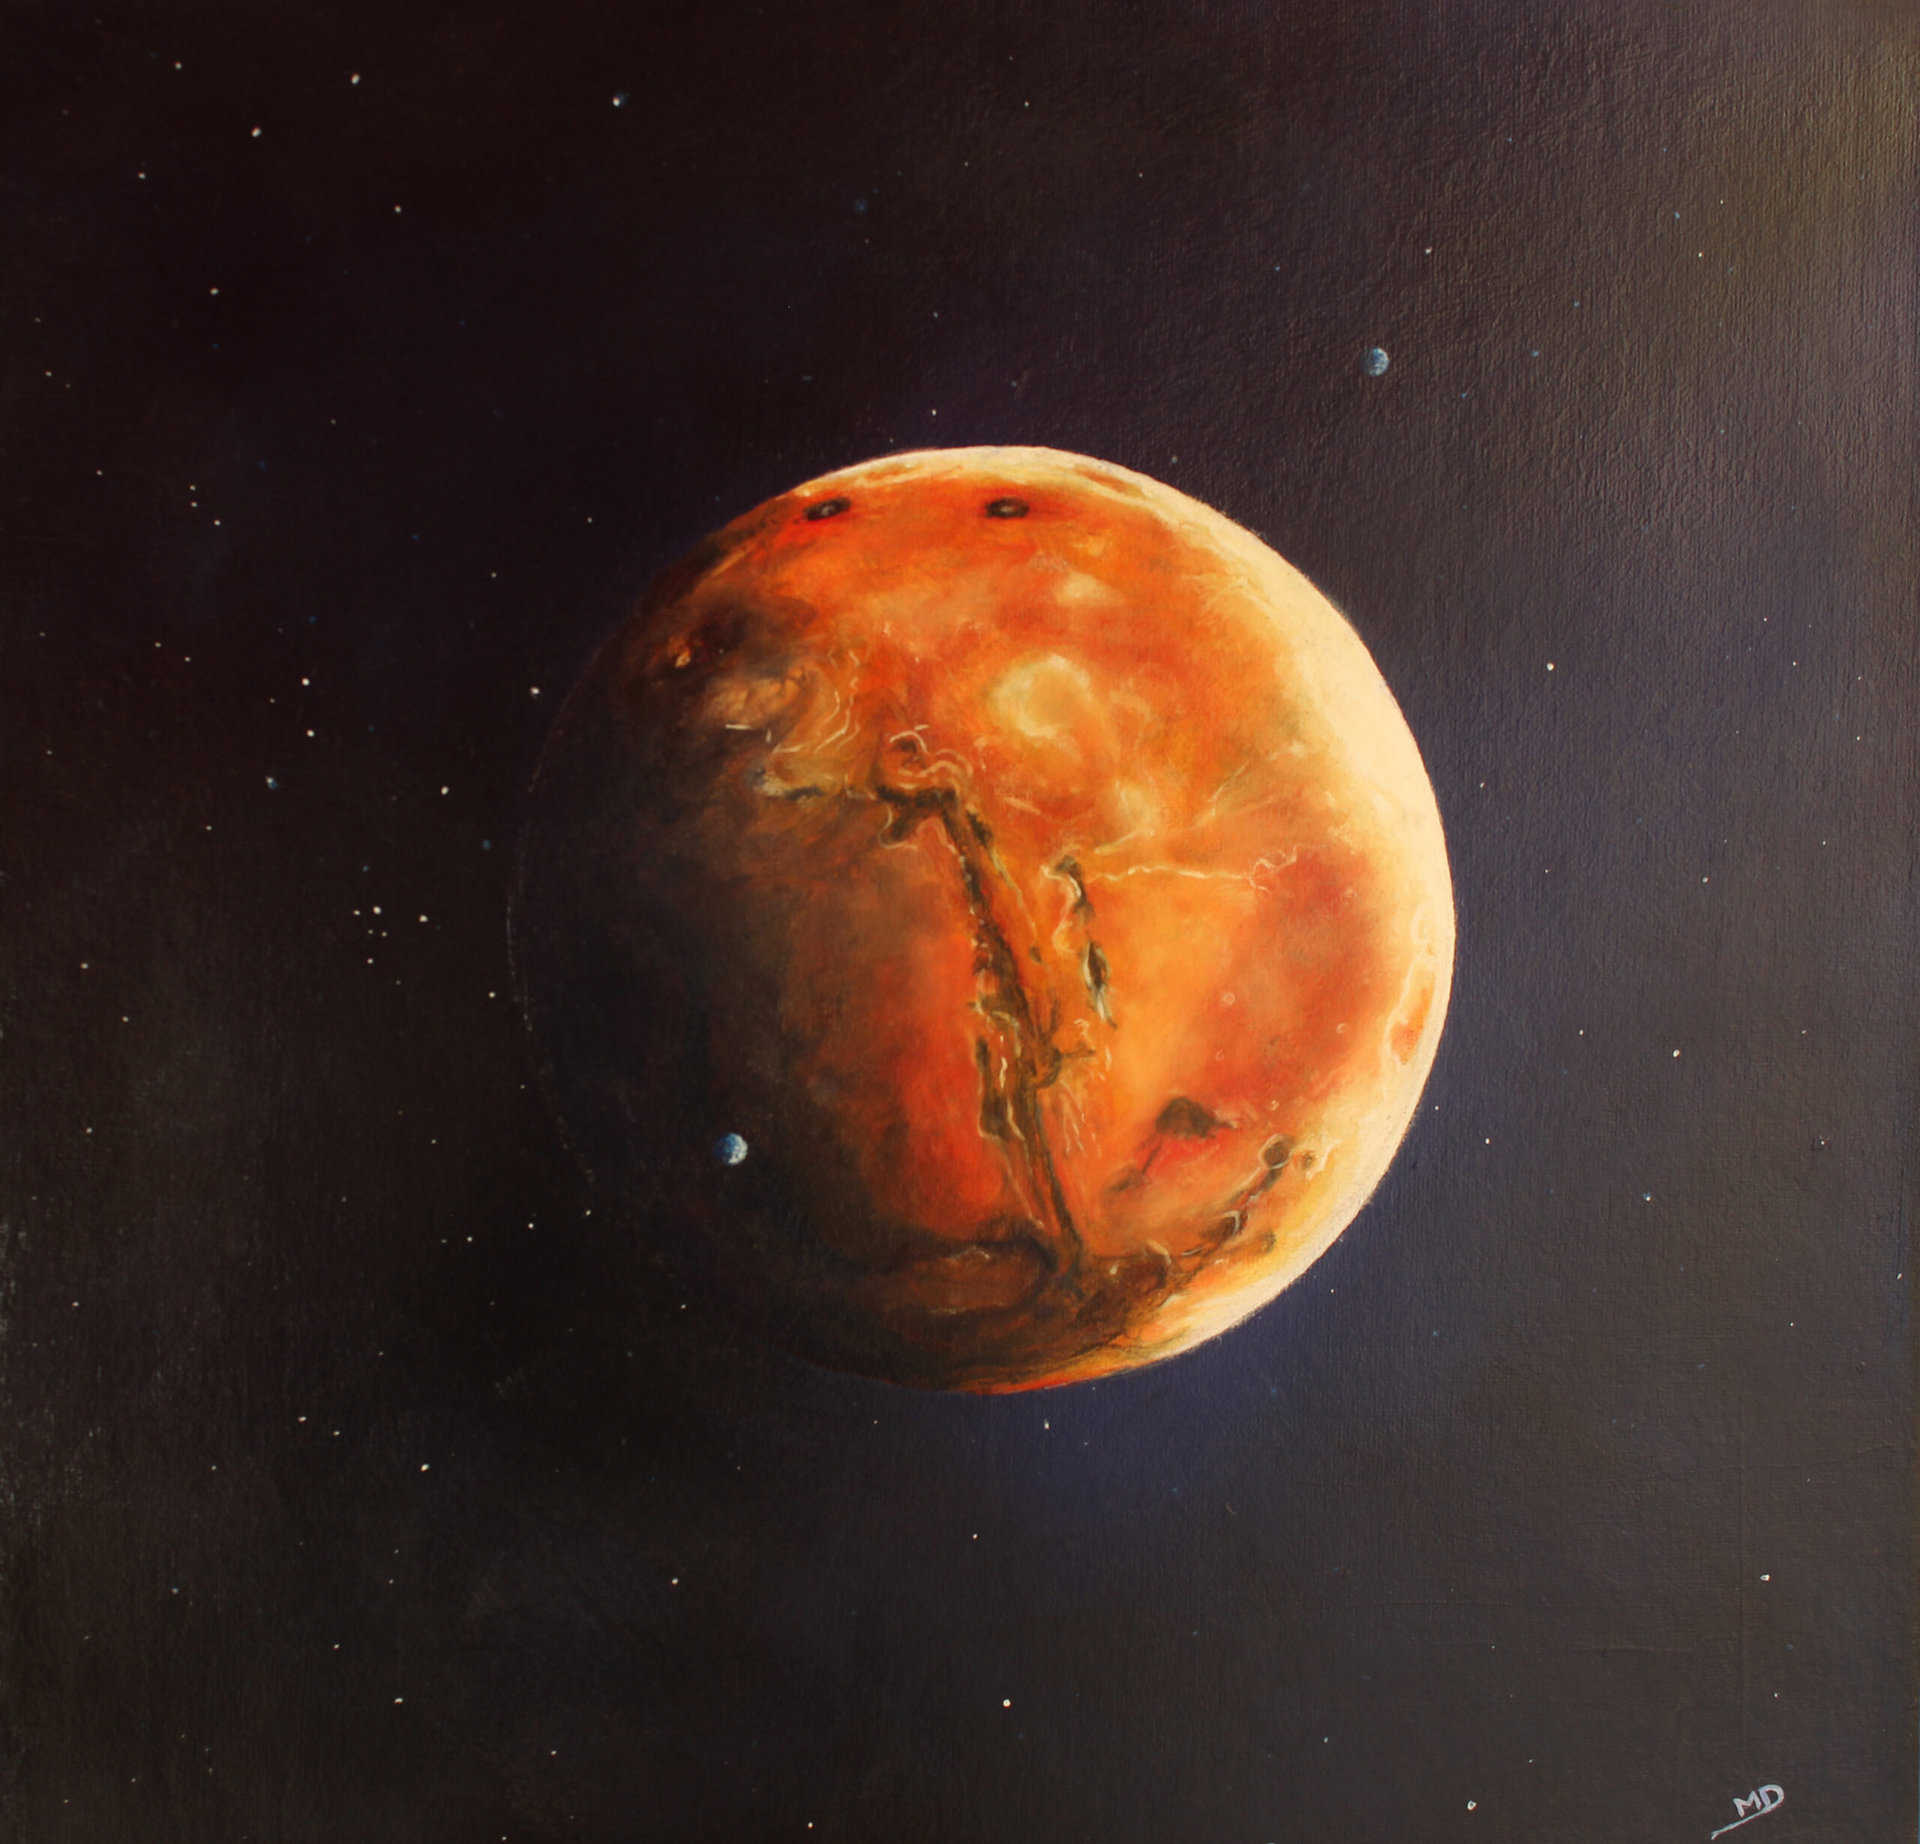 œuvre d'art, astronomie, huile sur toile 40/40cm, david morel artiste, planète mars avec ses satellites